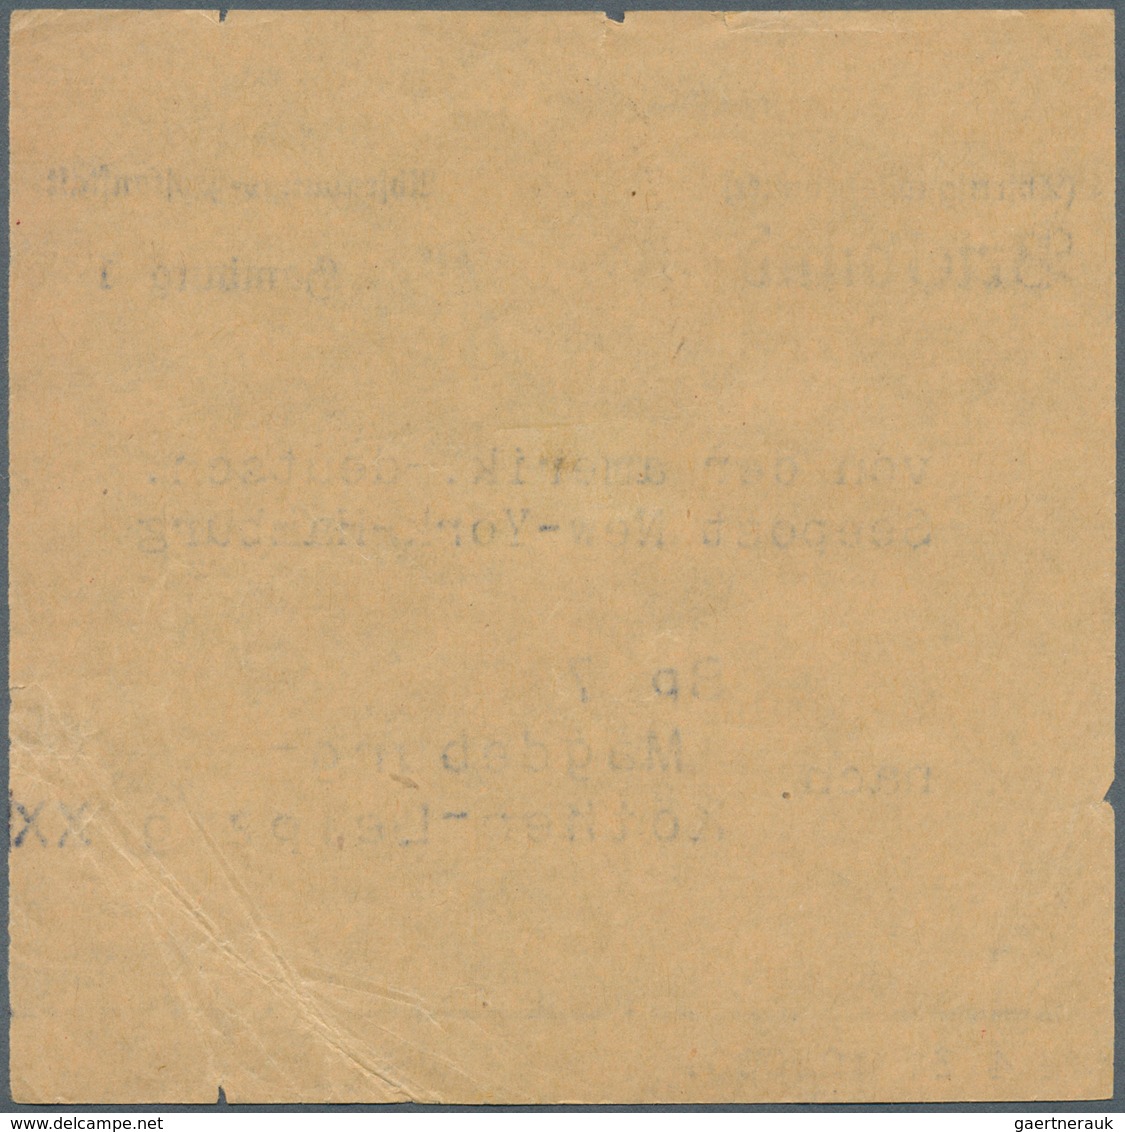 Deutsche Schiffspost im Ausland - Seepost: 1931 - 33, amerikan.-deut. Seepost New York - Hamburg, 10